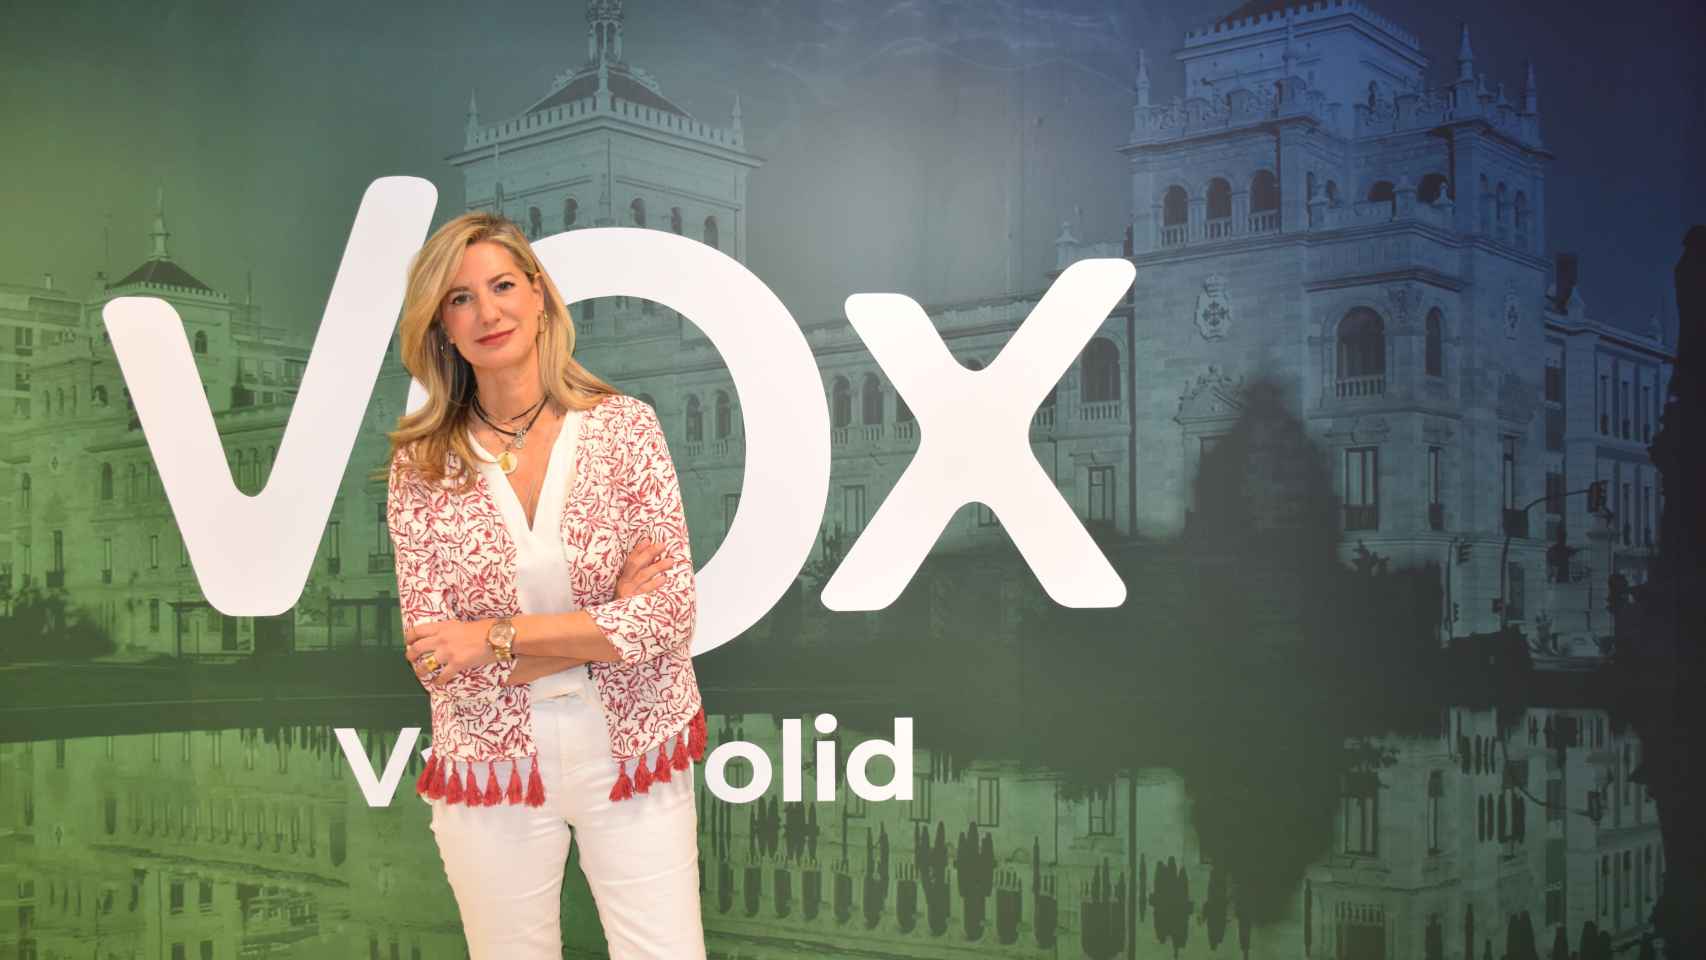 La candidata de Vox a la Alcaldía de Valladolid, Irene Carvajal, durante la entrevista.